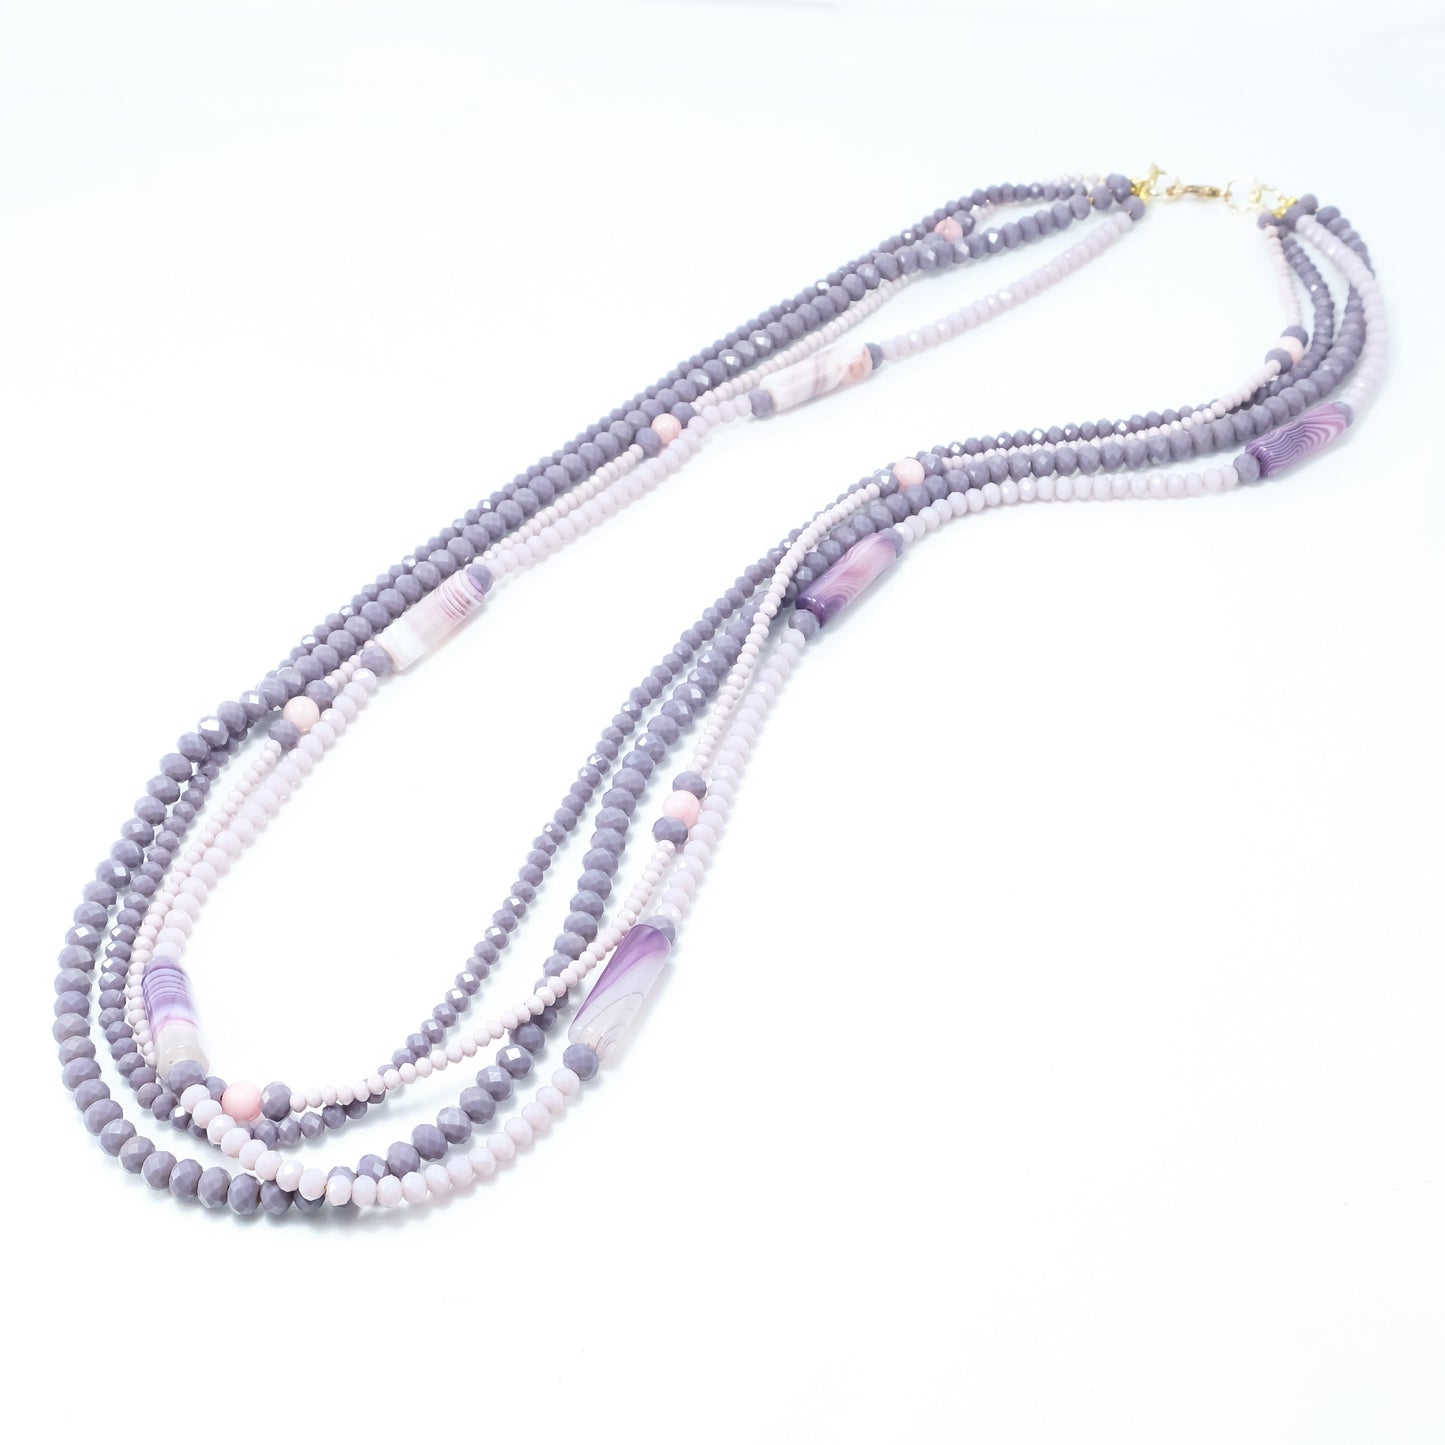 Collana I CRISTALLI .067, cristalli colore viola e lavanda,  agata viola e farfalla